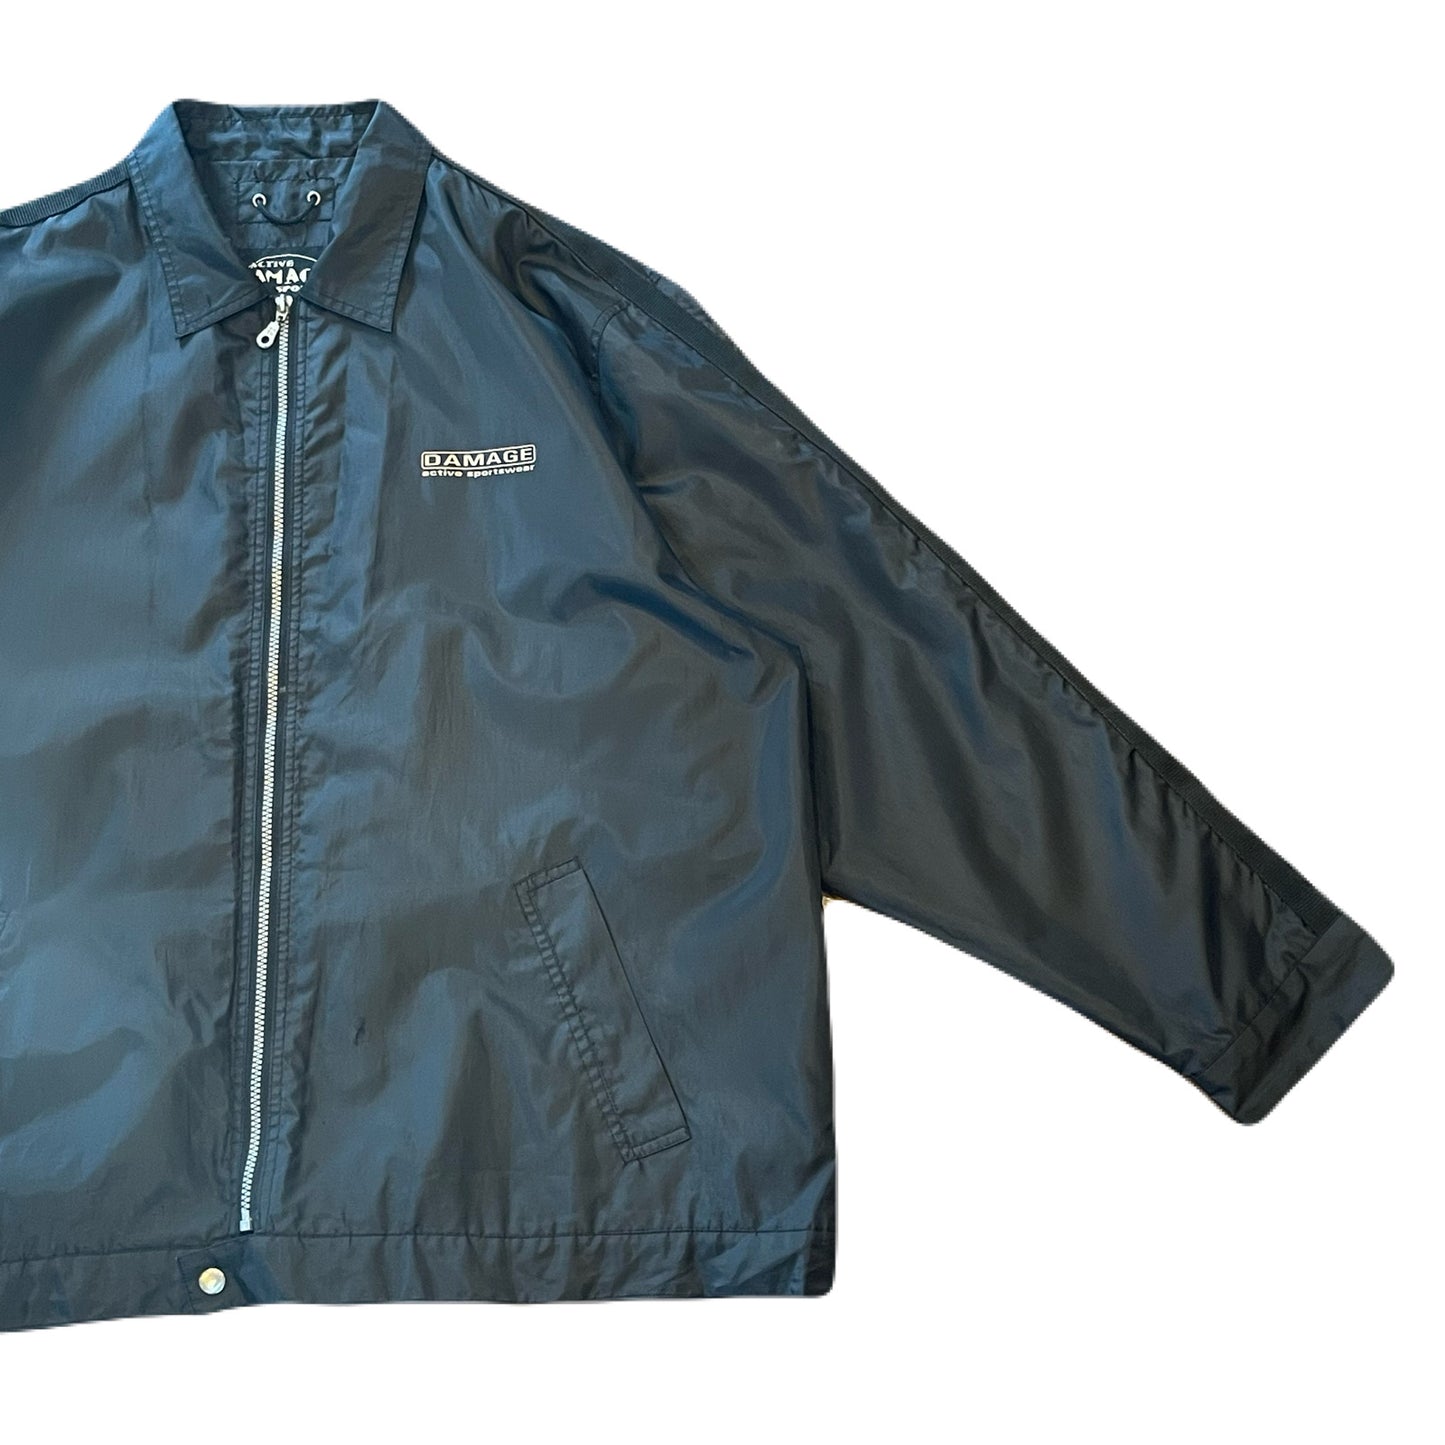 "DAMAGE active sportswear" nylon jacket　XL